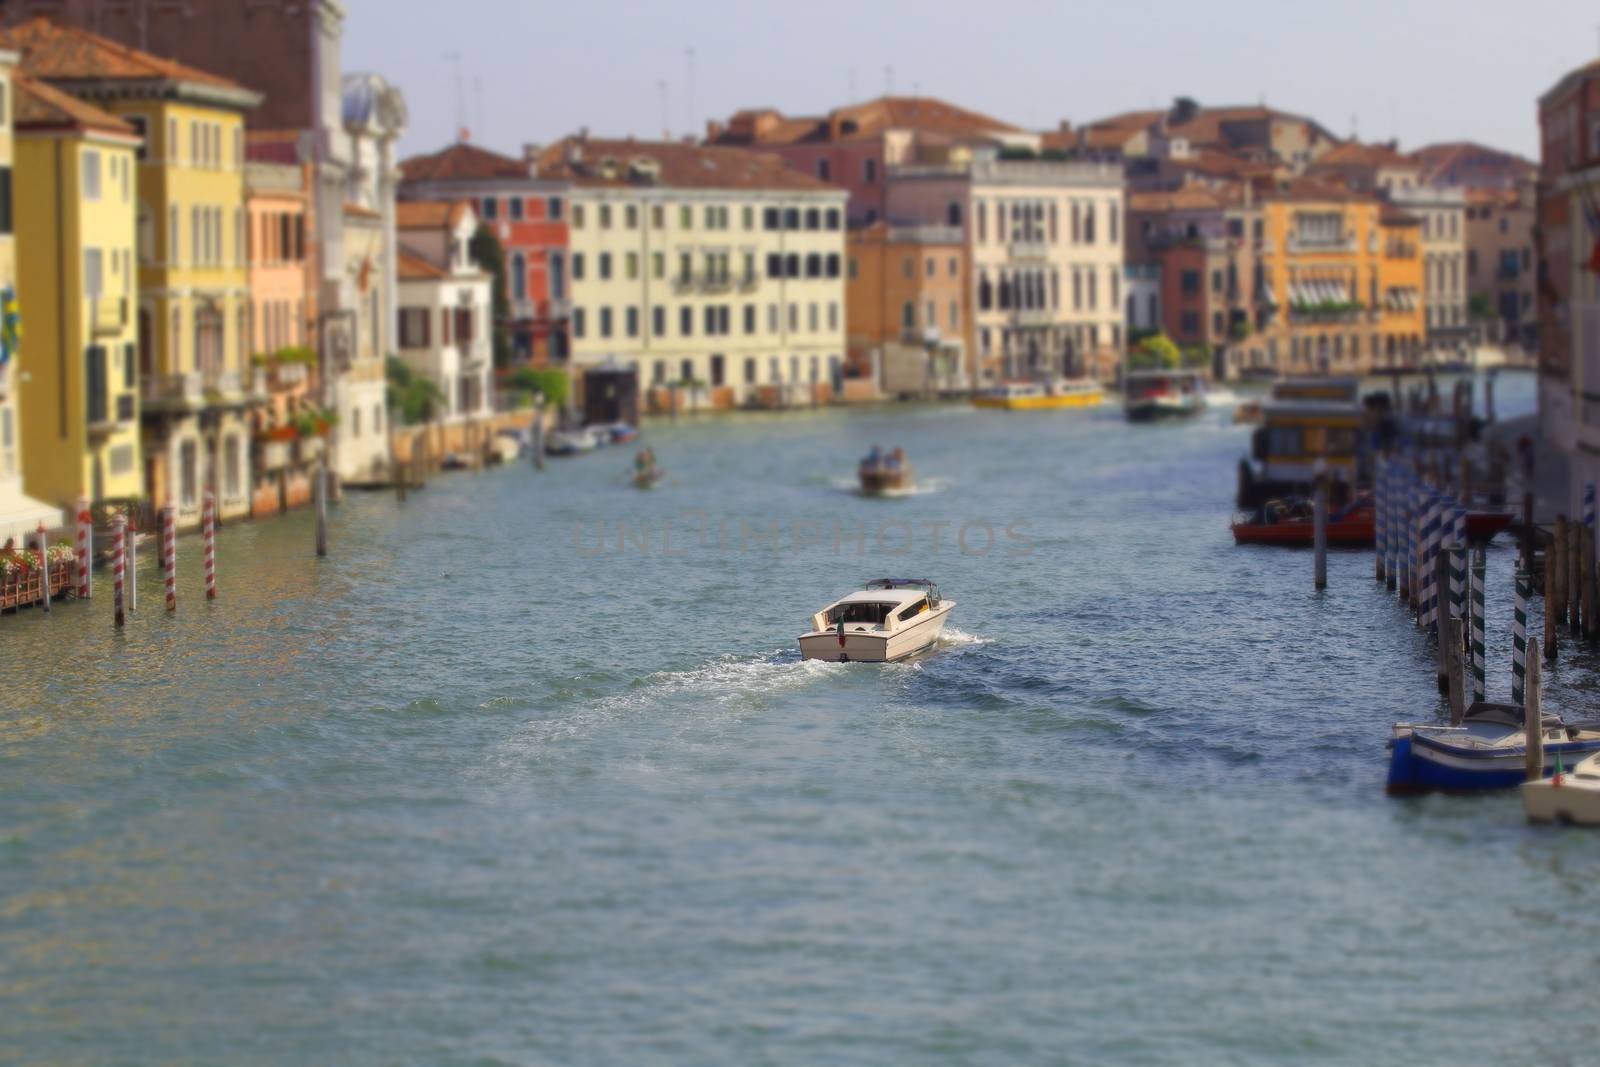 Venice, Italy by riccardofe